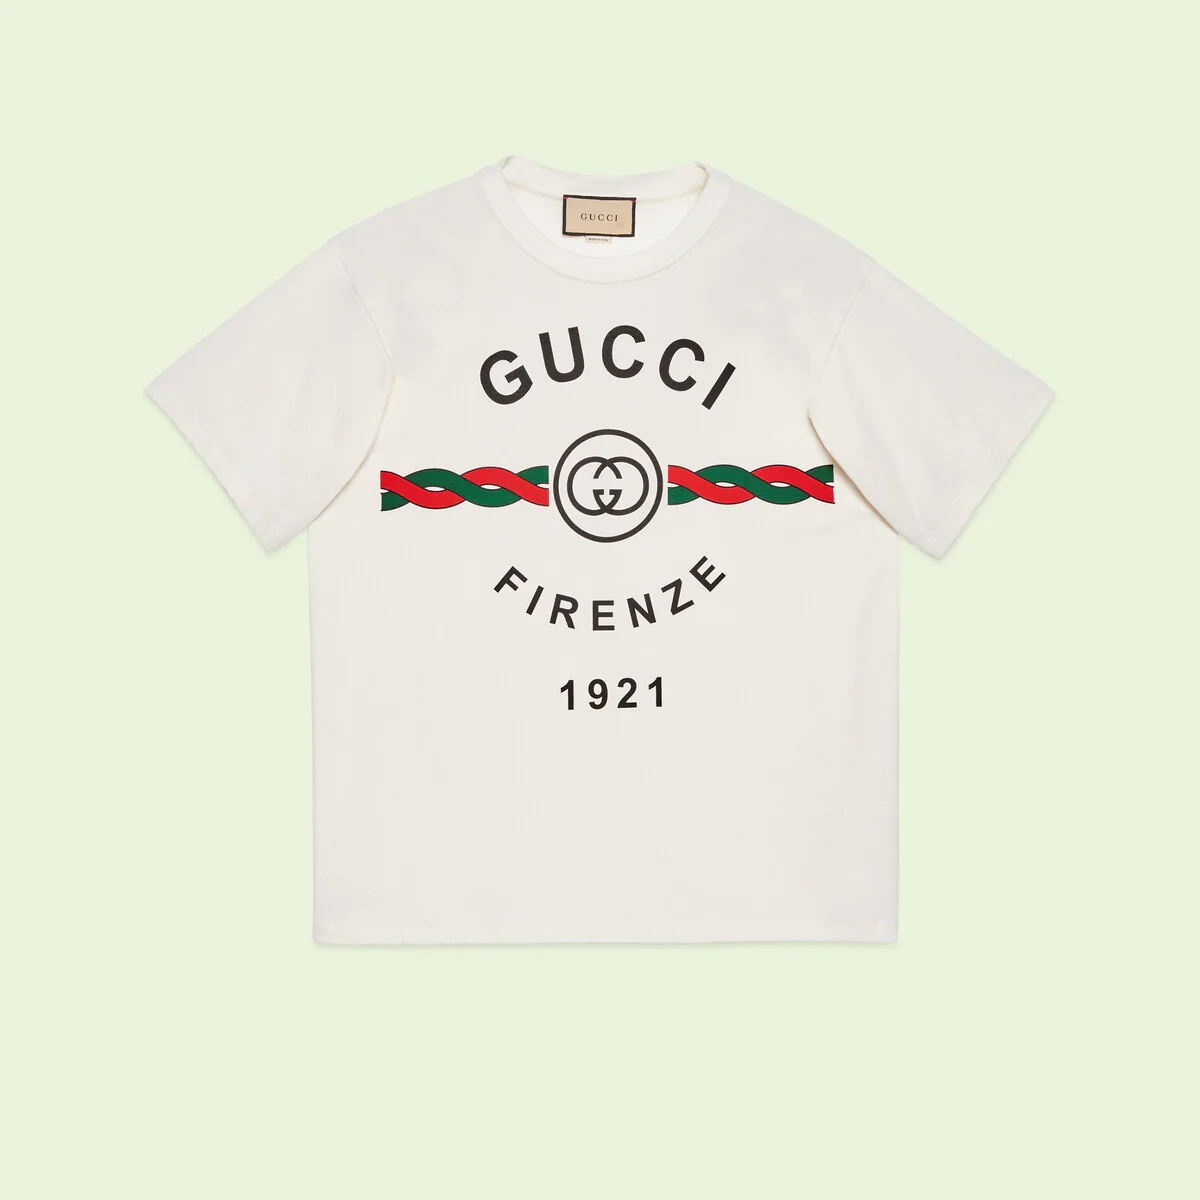 Cotton jersey 'Gucci Firenze 1921' T-shirt - 1